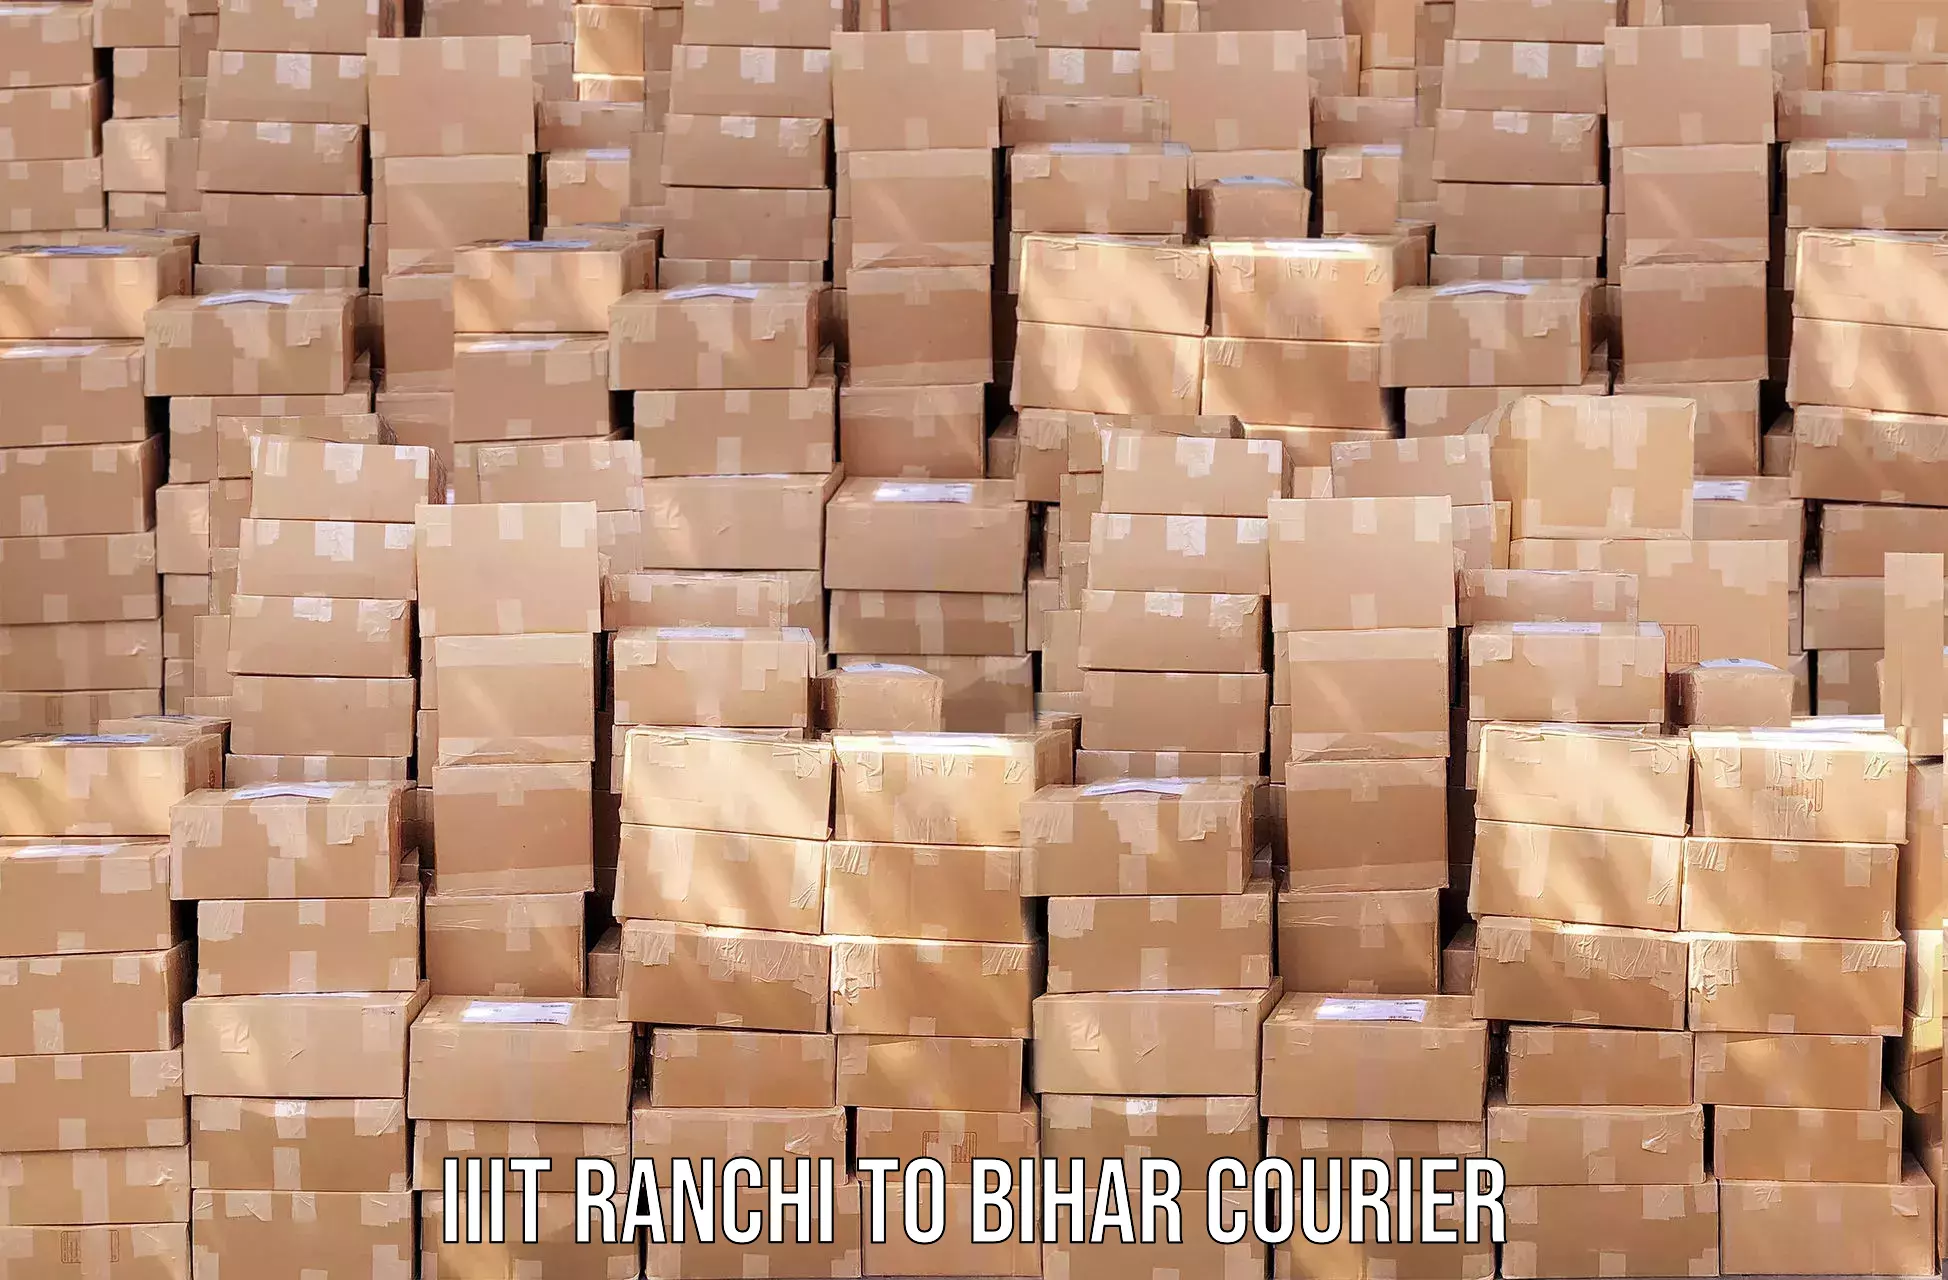 24/7 courier service IIIT Ranchi to Bihar